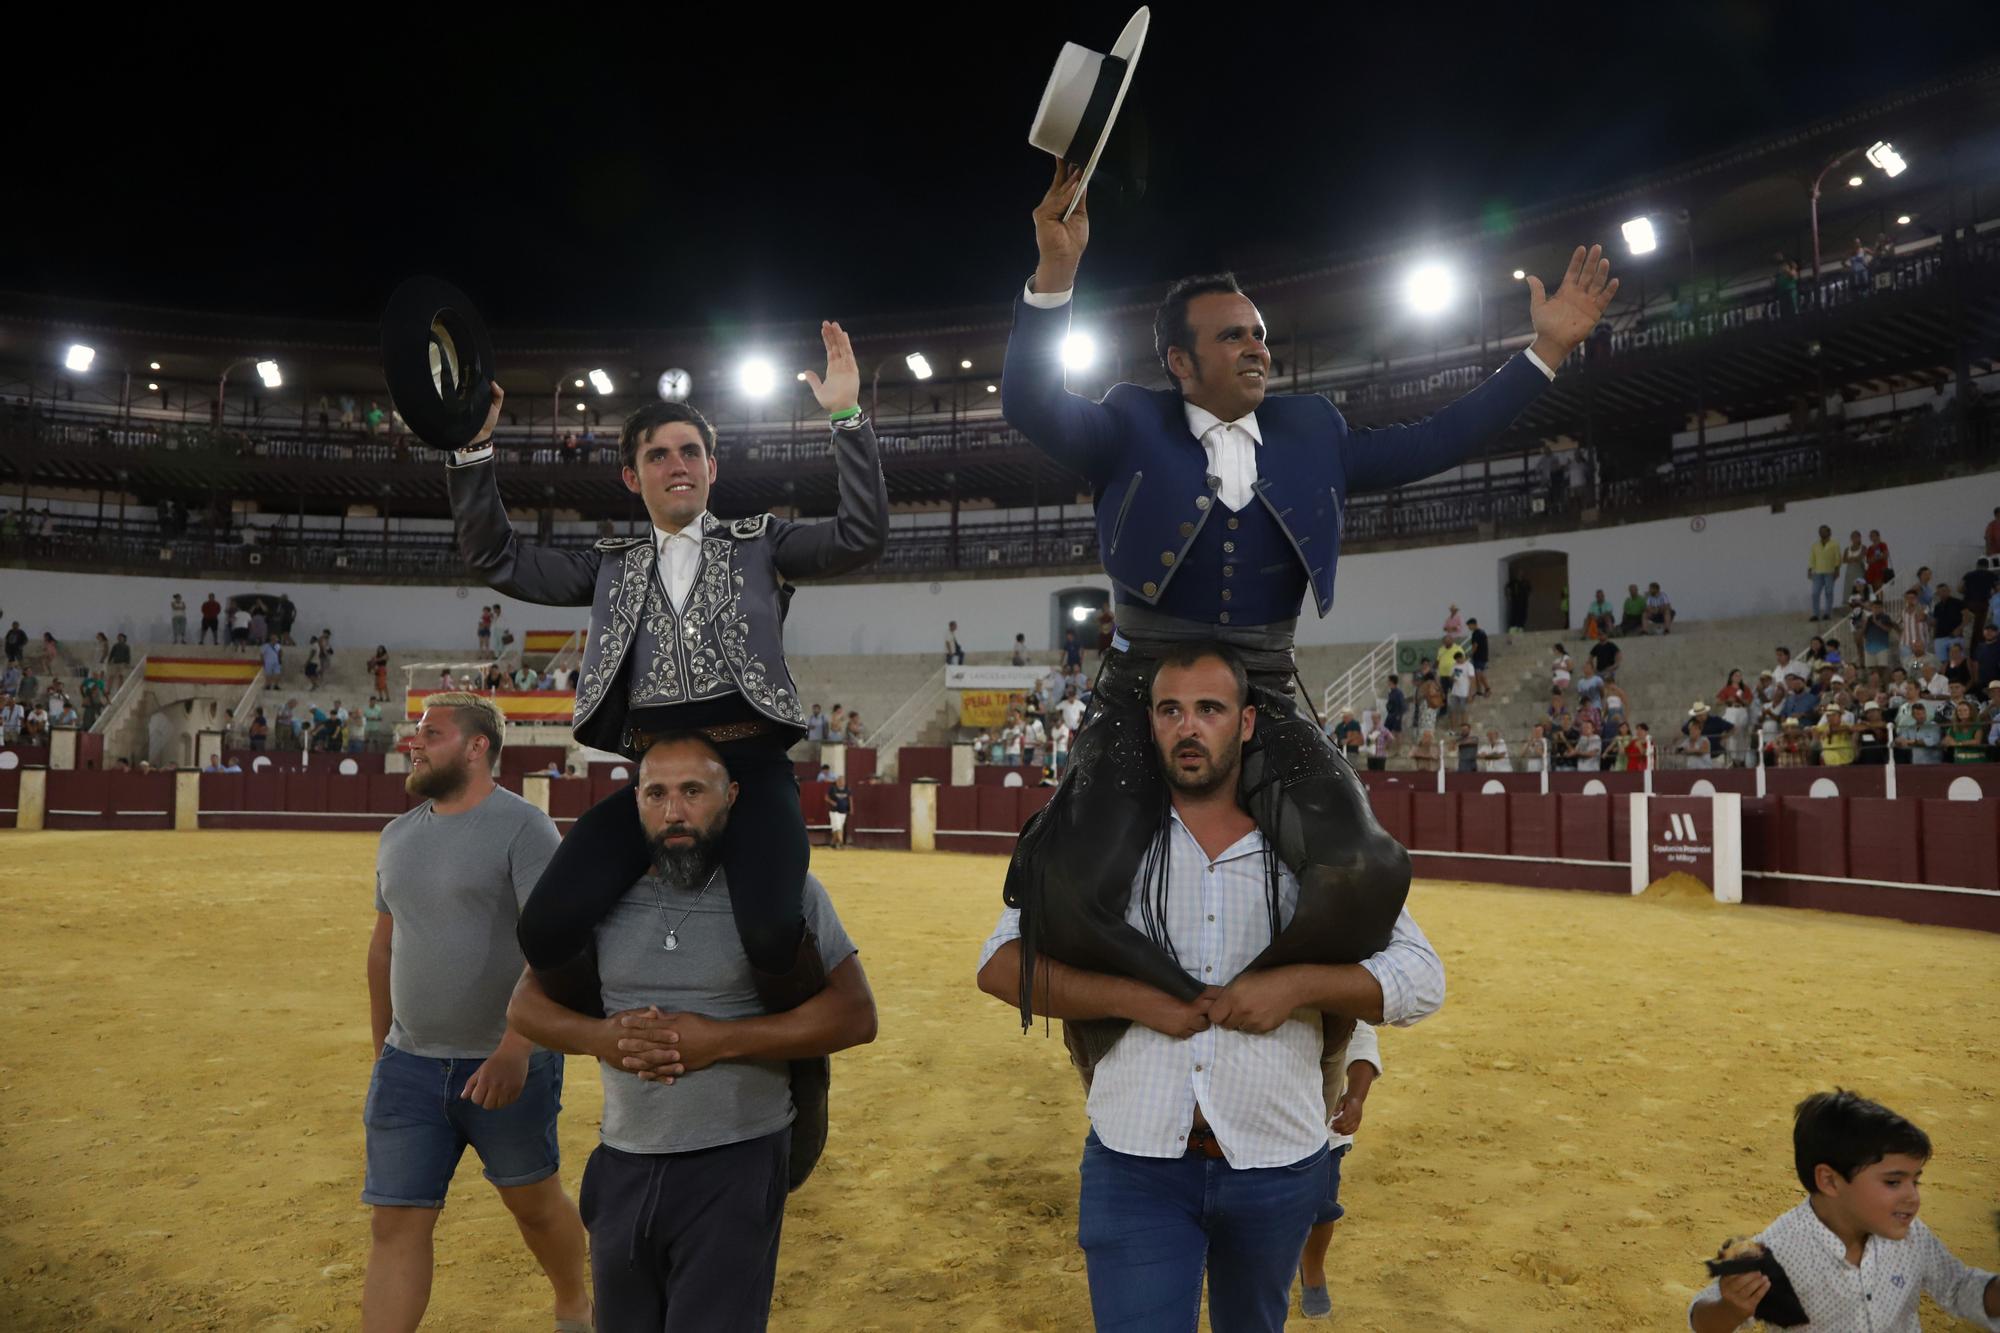 Rejones en la Feria de Málaga: Guillermo Hermoso y Ferrer Martín, doble Puerta Grande en Málaga